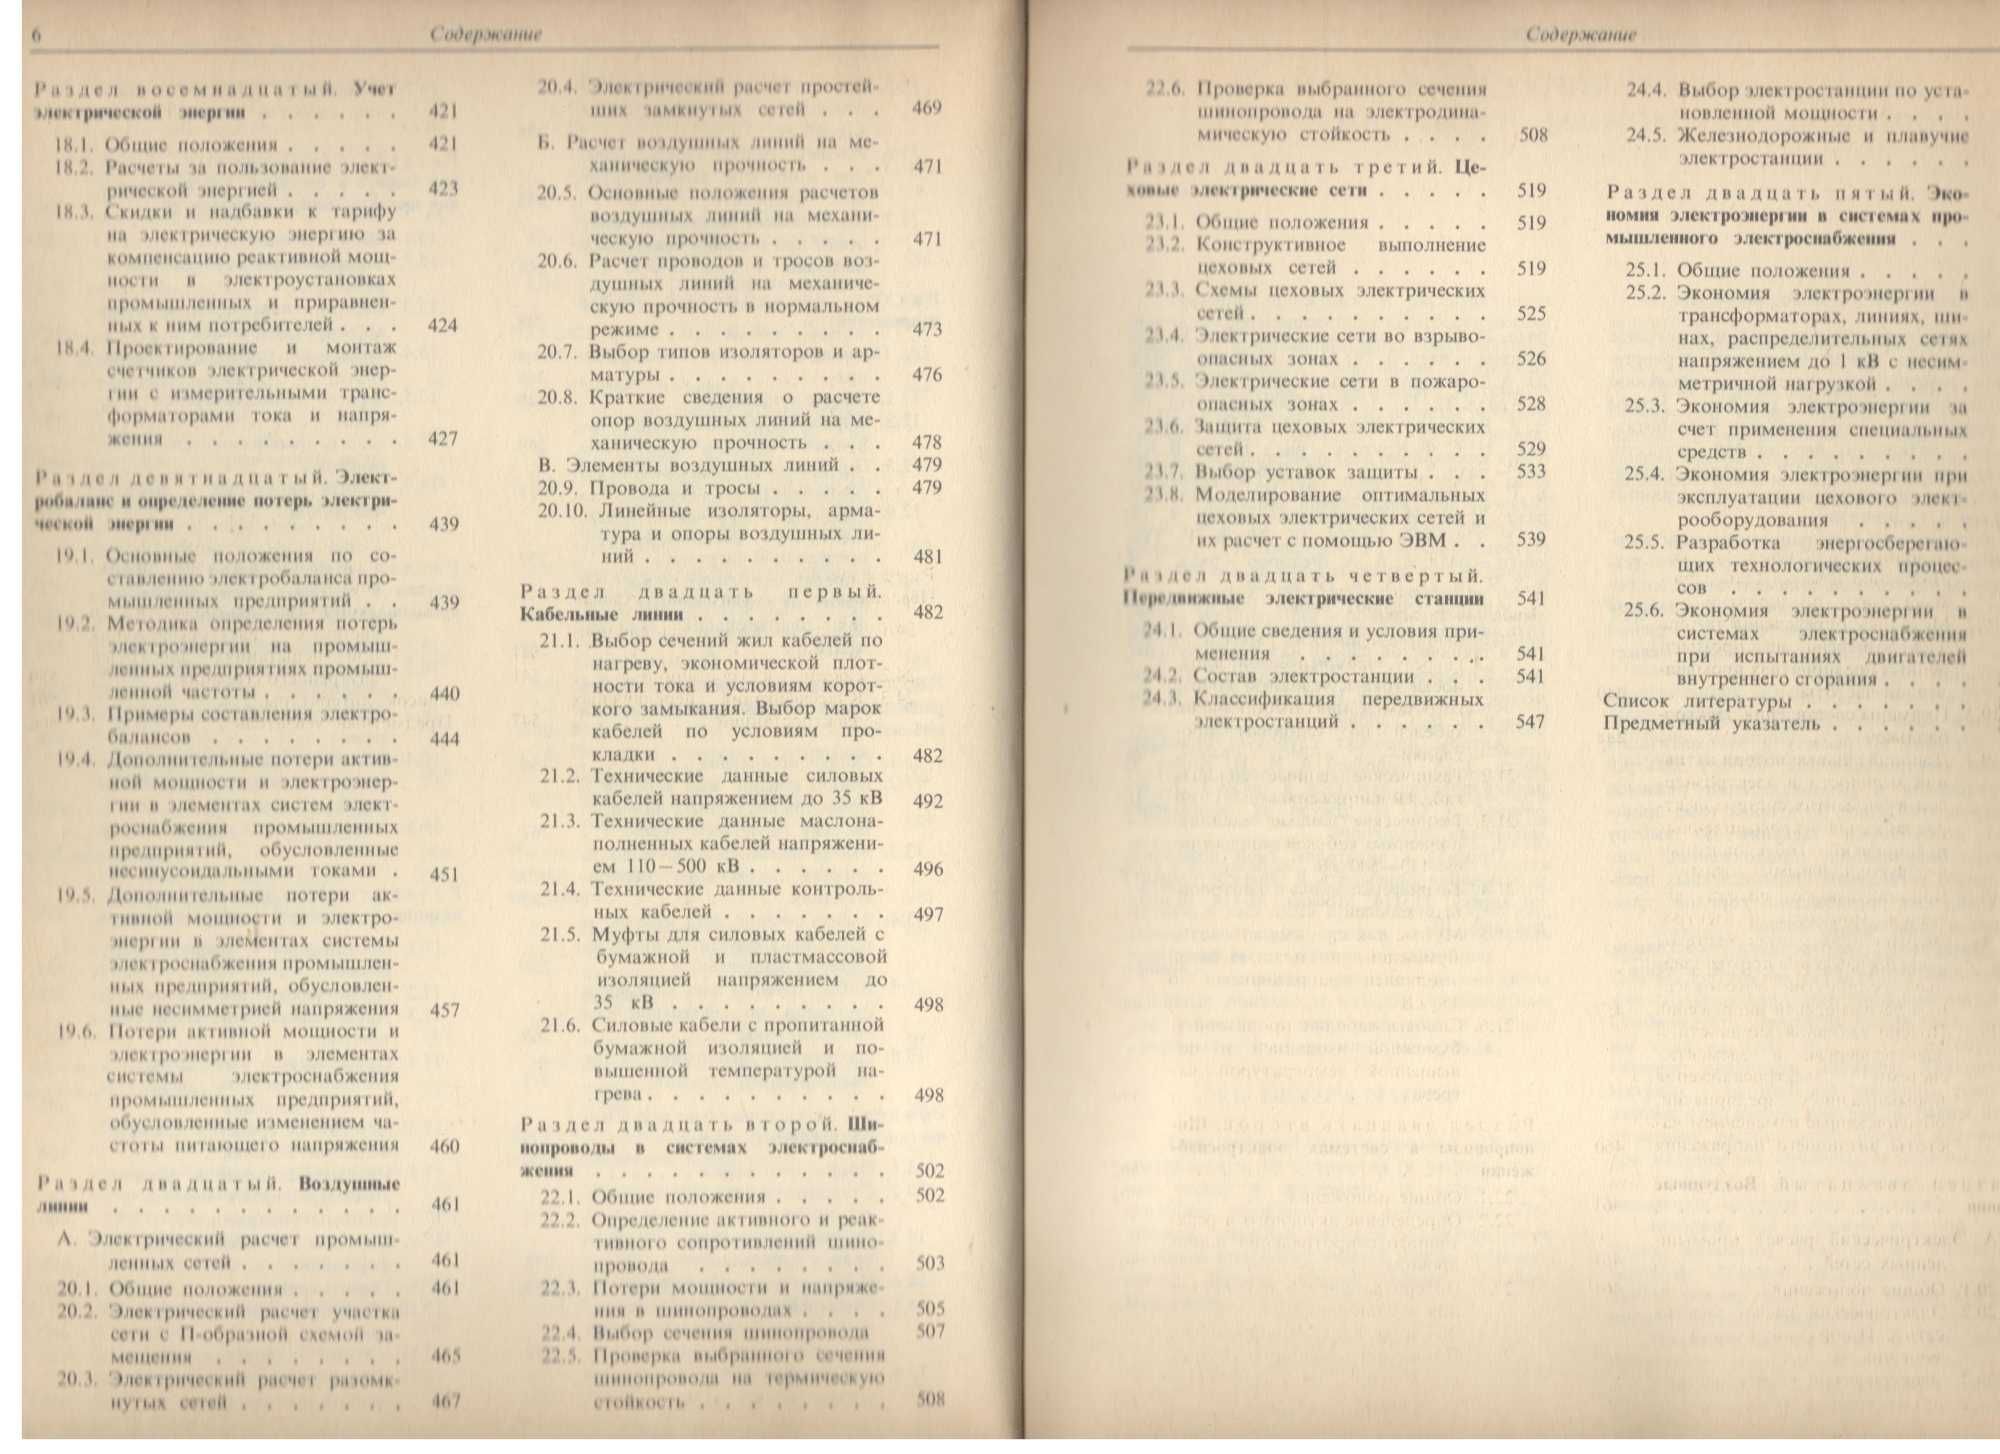 Справочник по электроснабжению и электрооборудованию 2 т Москва 1986 г